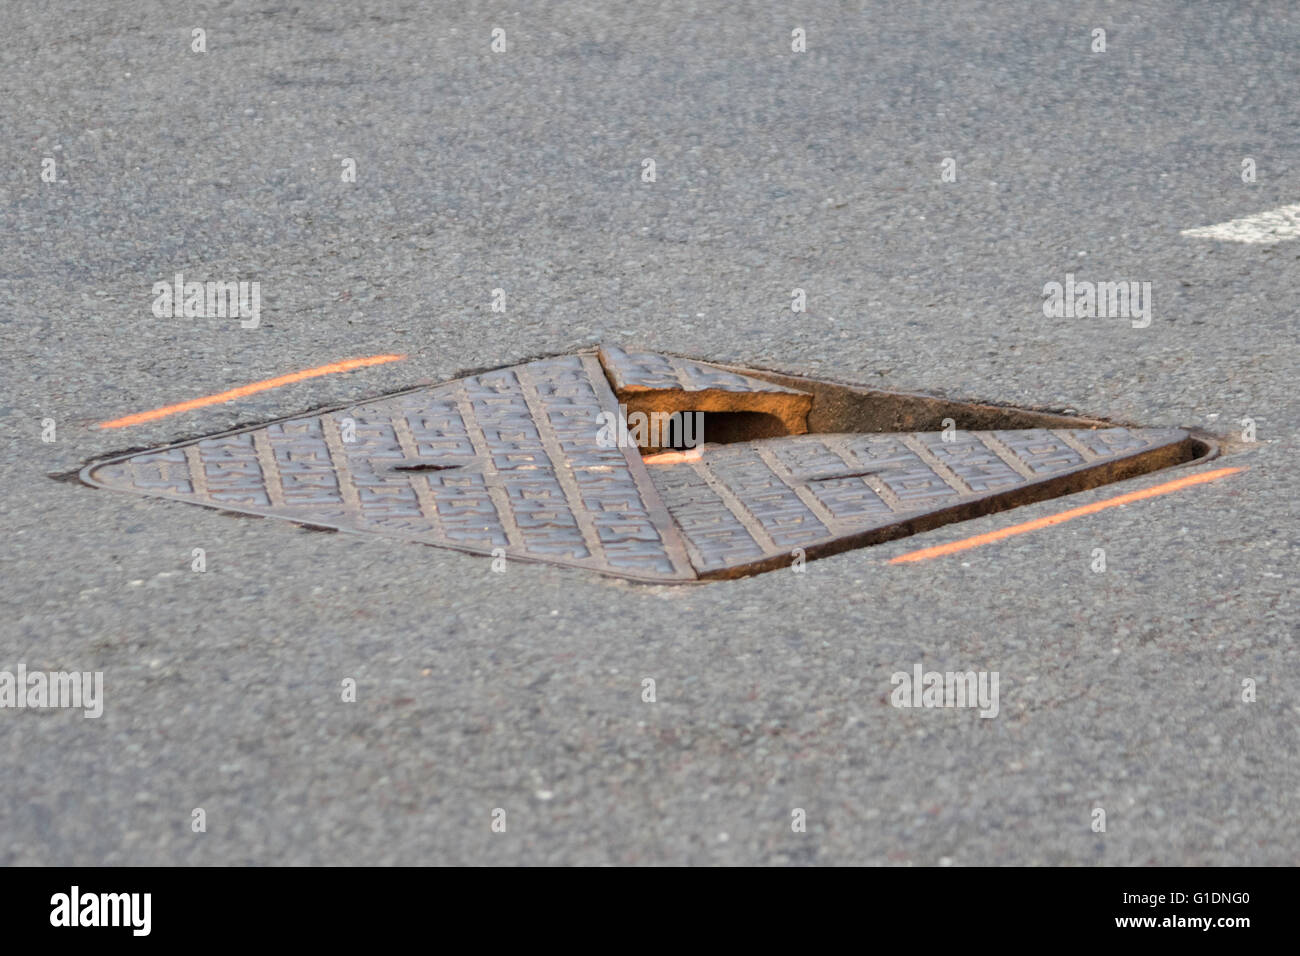 Rotture di ghisa su strada il coperchio di scarico, England, Regno Unito Foto Stock